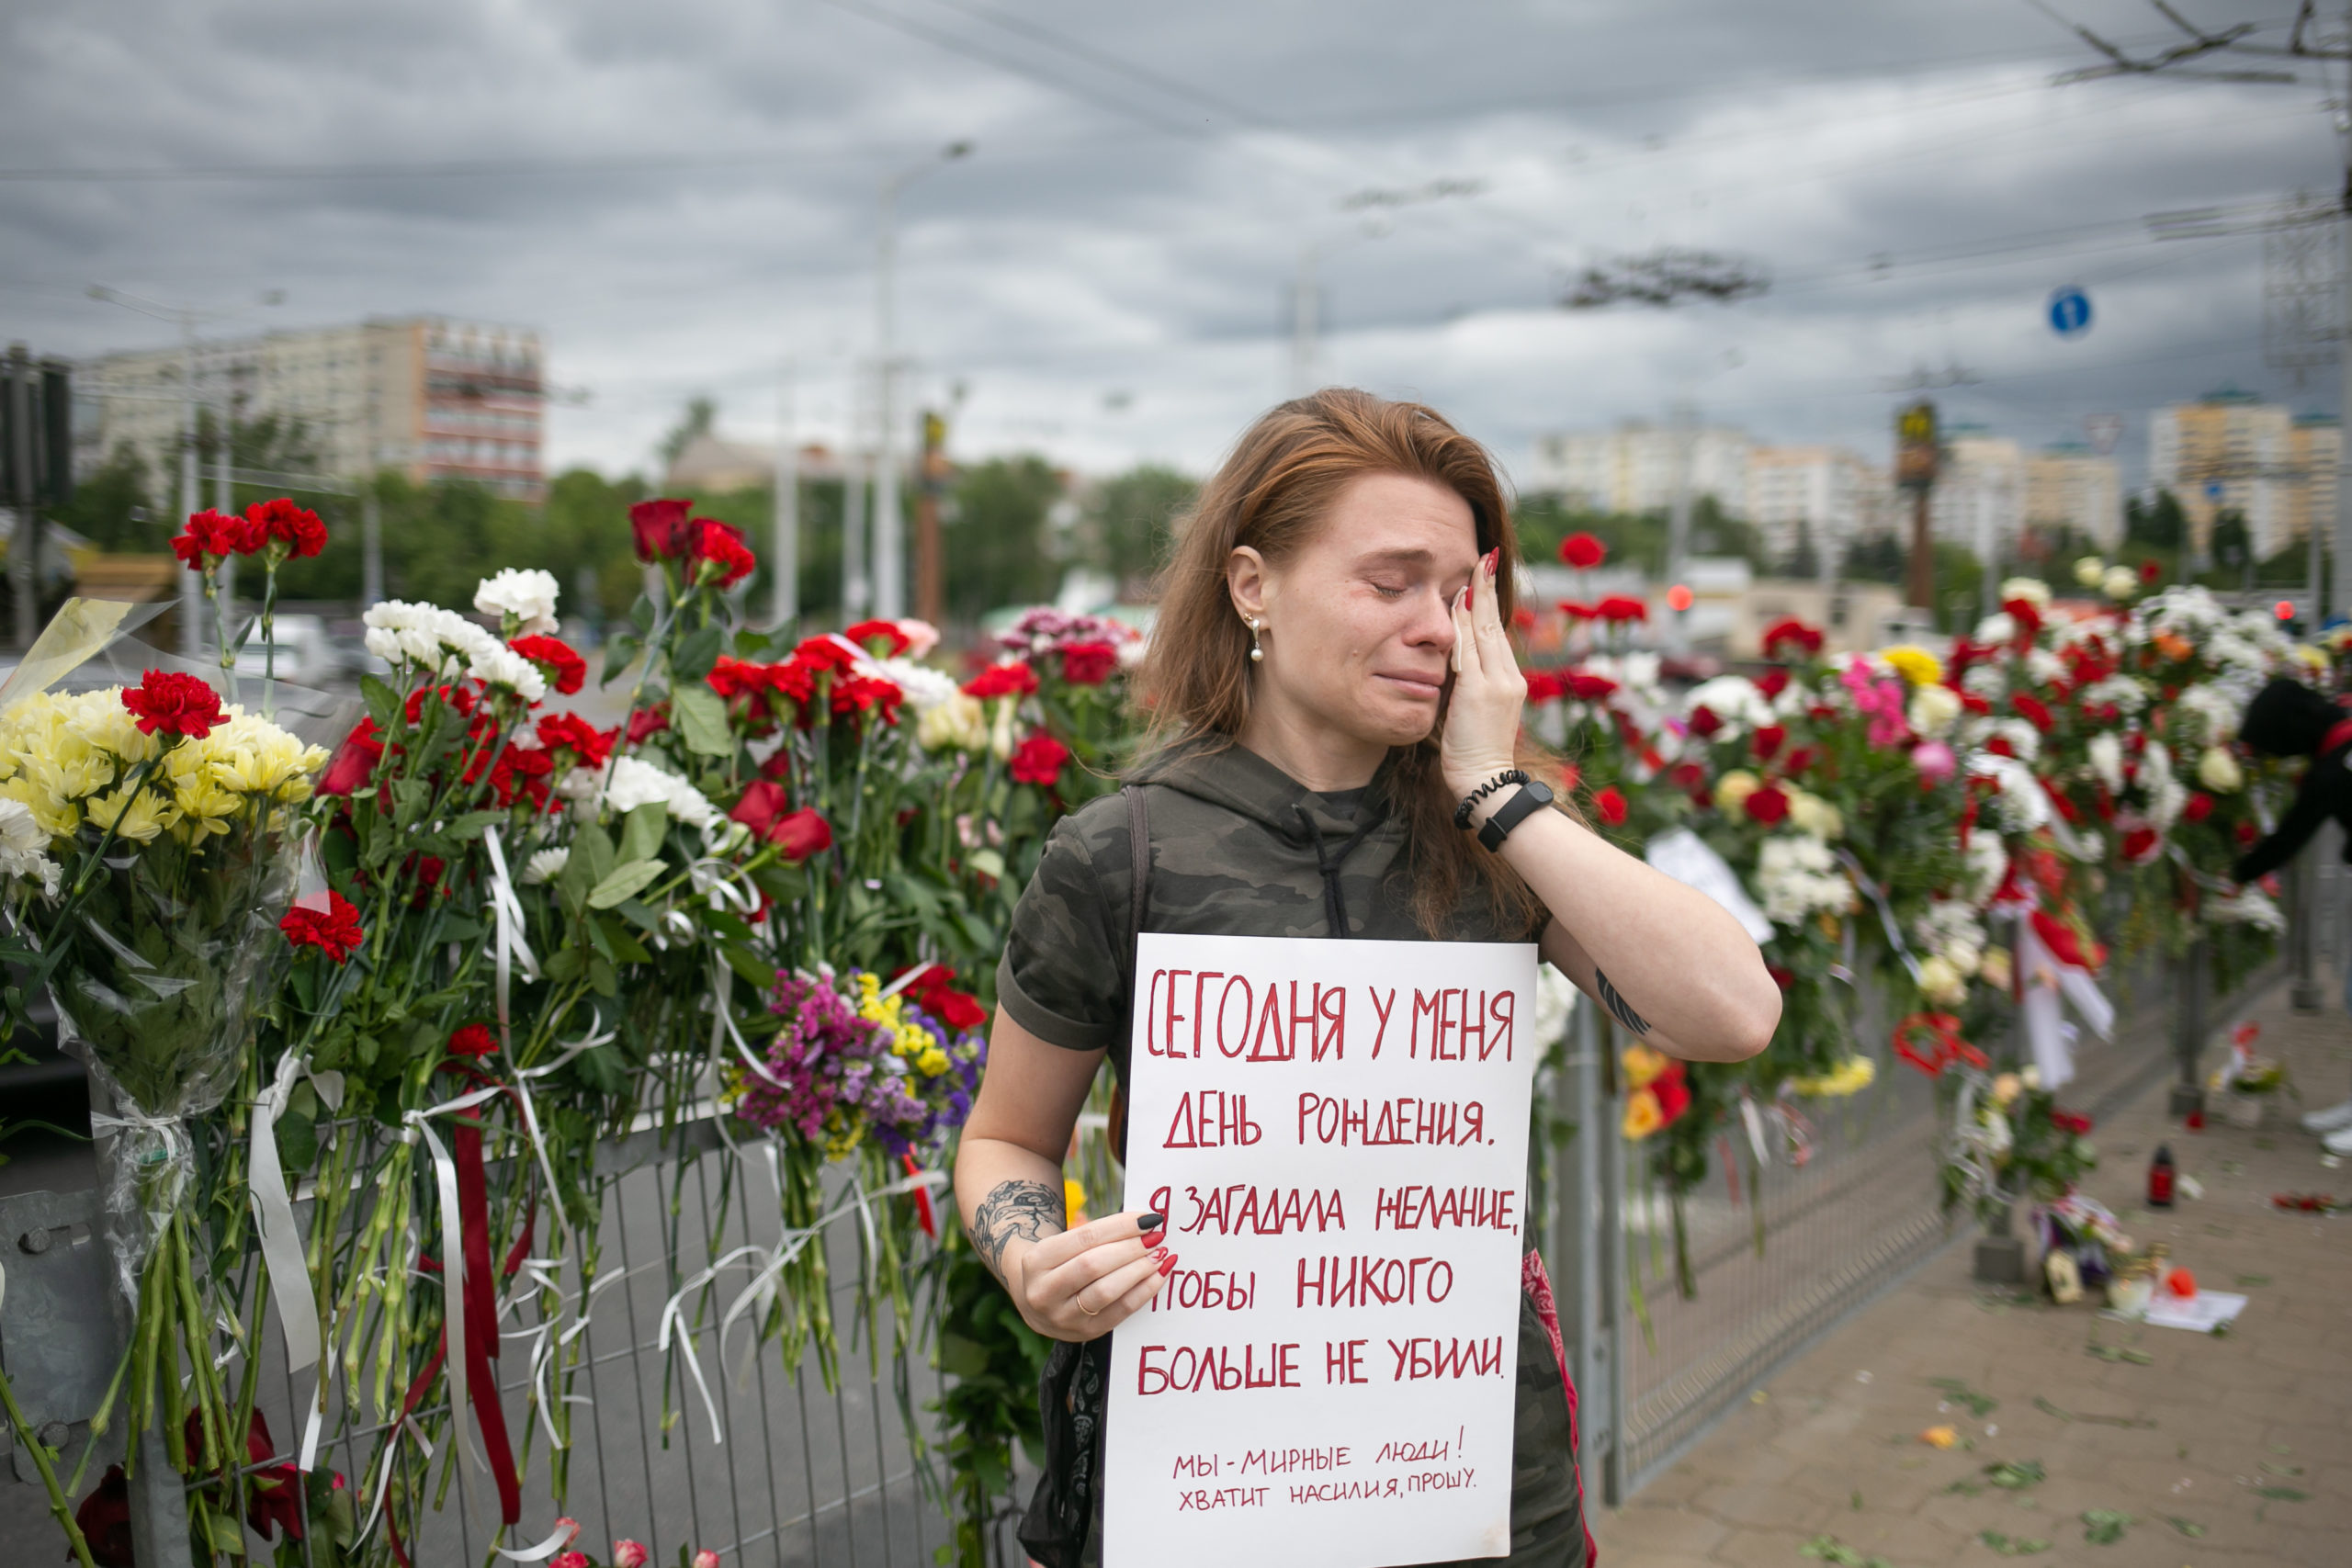 Una joven llora cerca del monumento conmemorativo en honor de Alexandr Taraikovsky, un manifestante asesinado por la policía. Su pancarta dice: "Hoy es mi cumpleaños. Deseo que no maten a nadie más. ¡Somos gente pacífica! Parad la violencia, os lo suplico". Minsk, agosto de 2020.